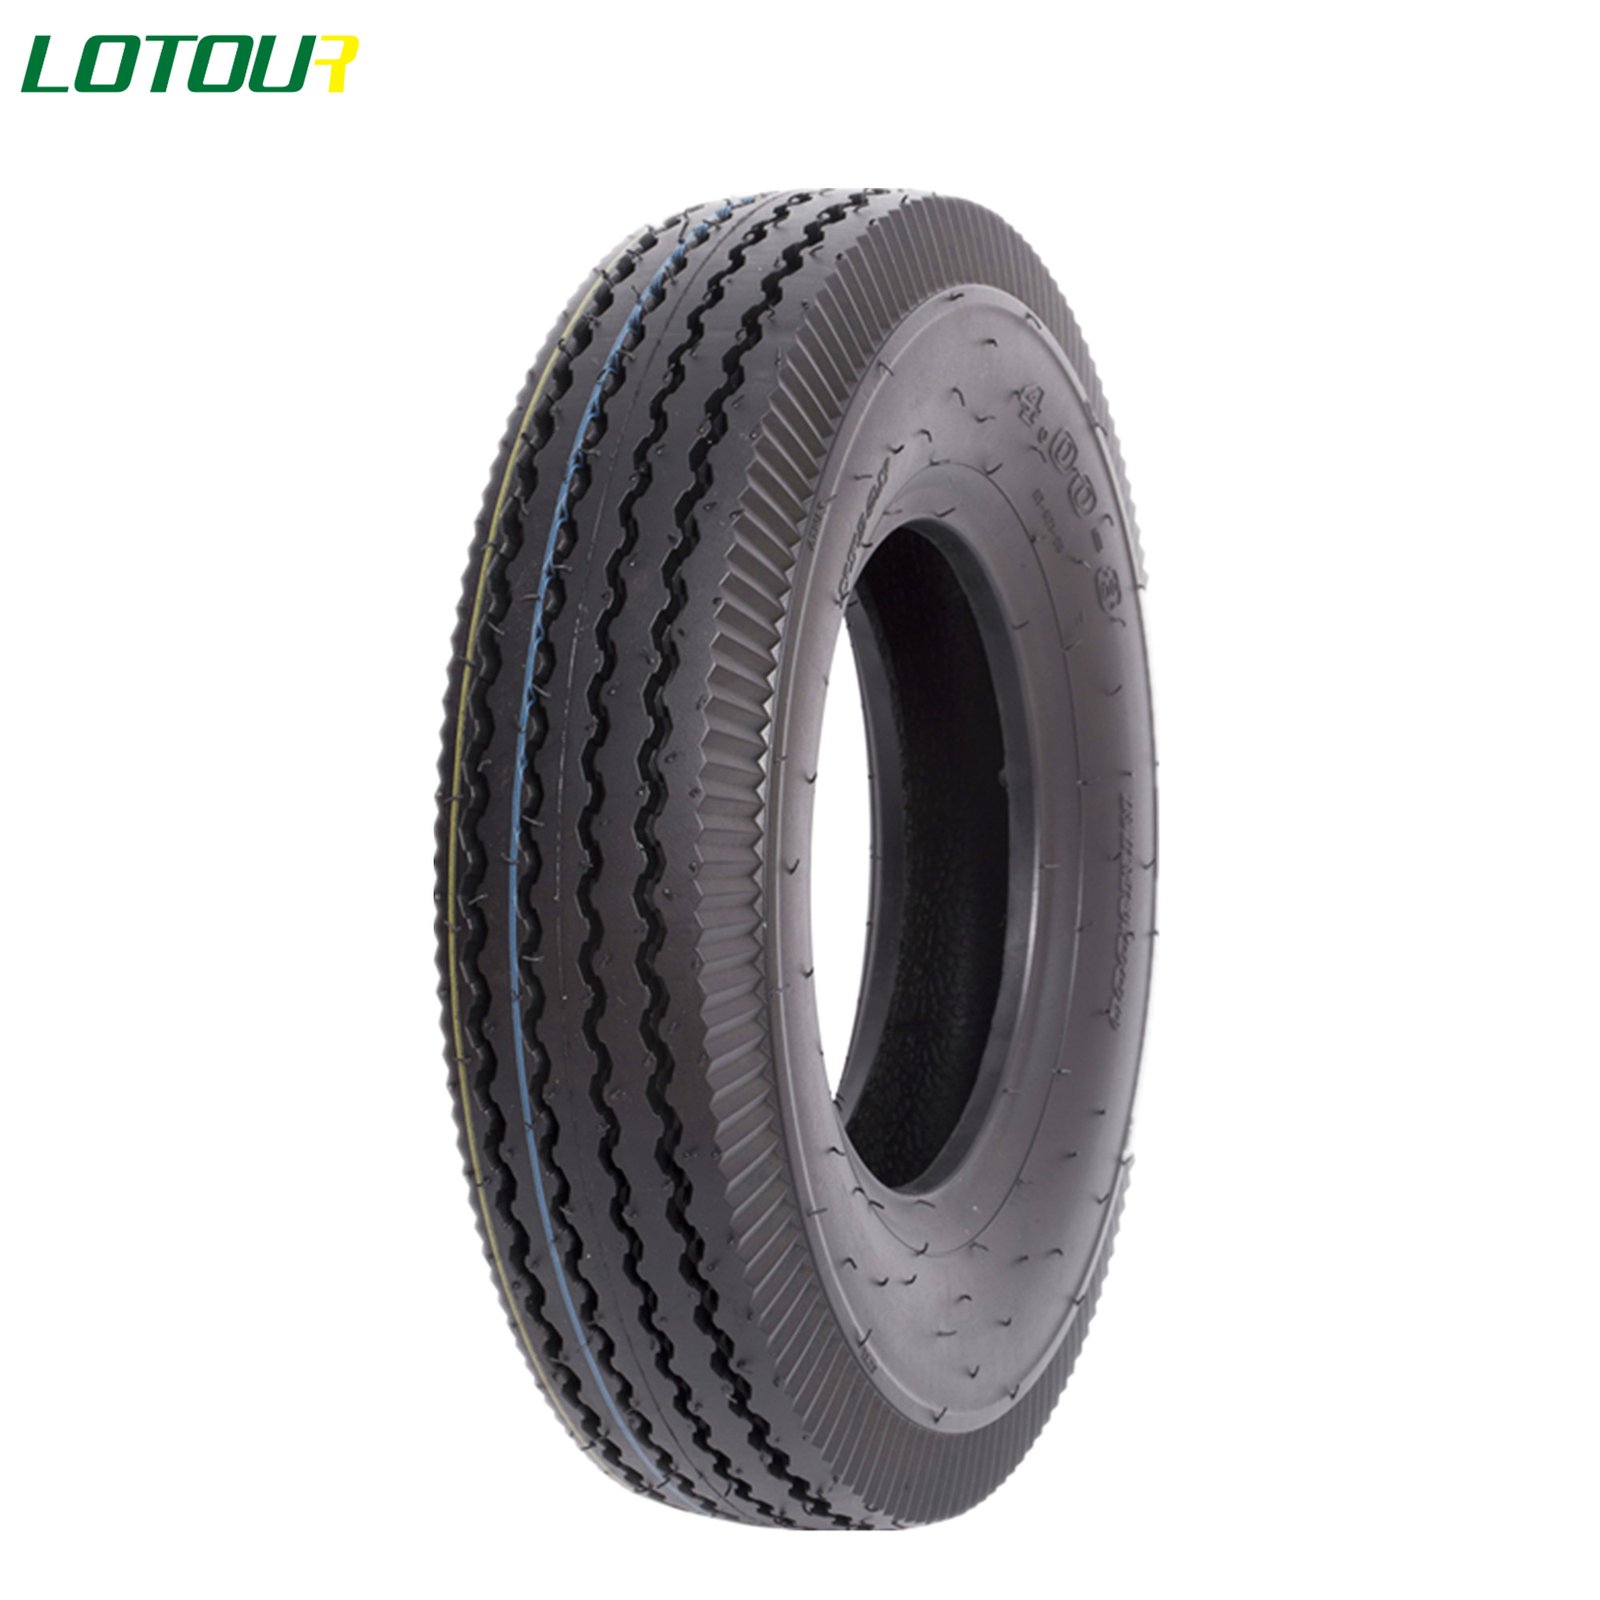 Lotour Tire M2075